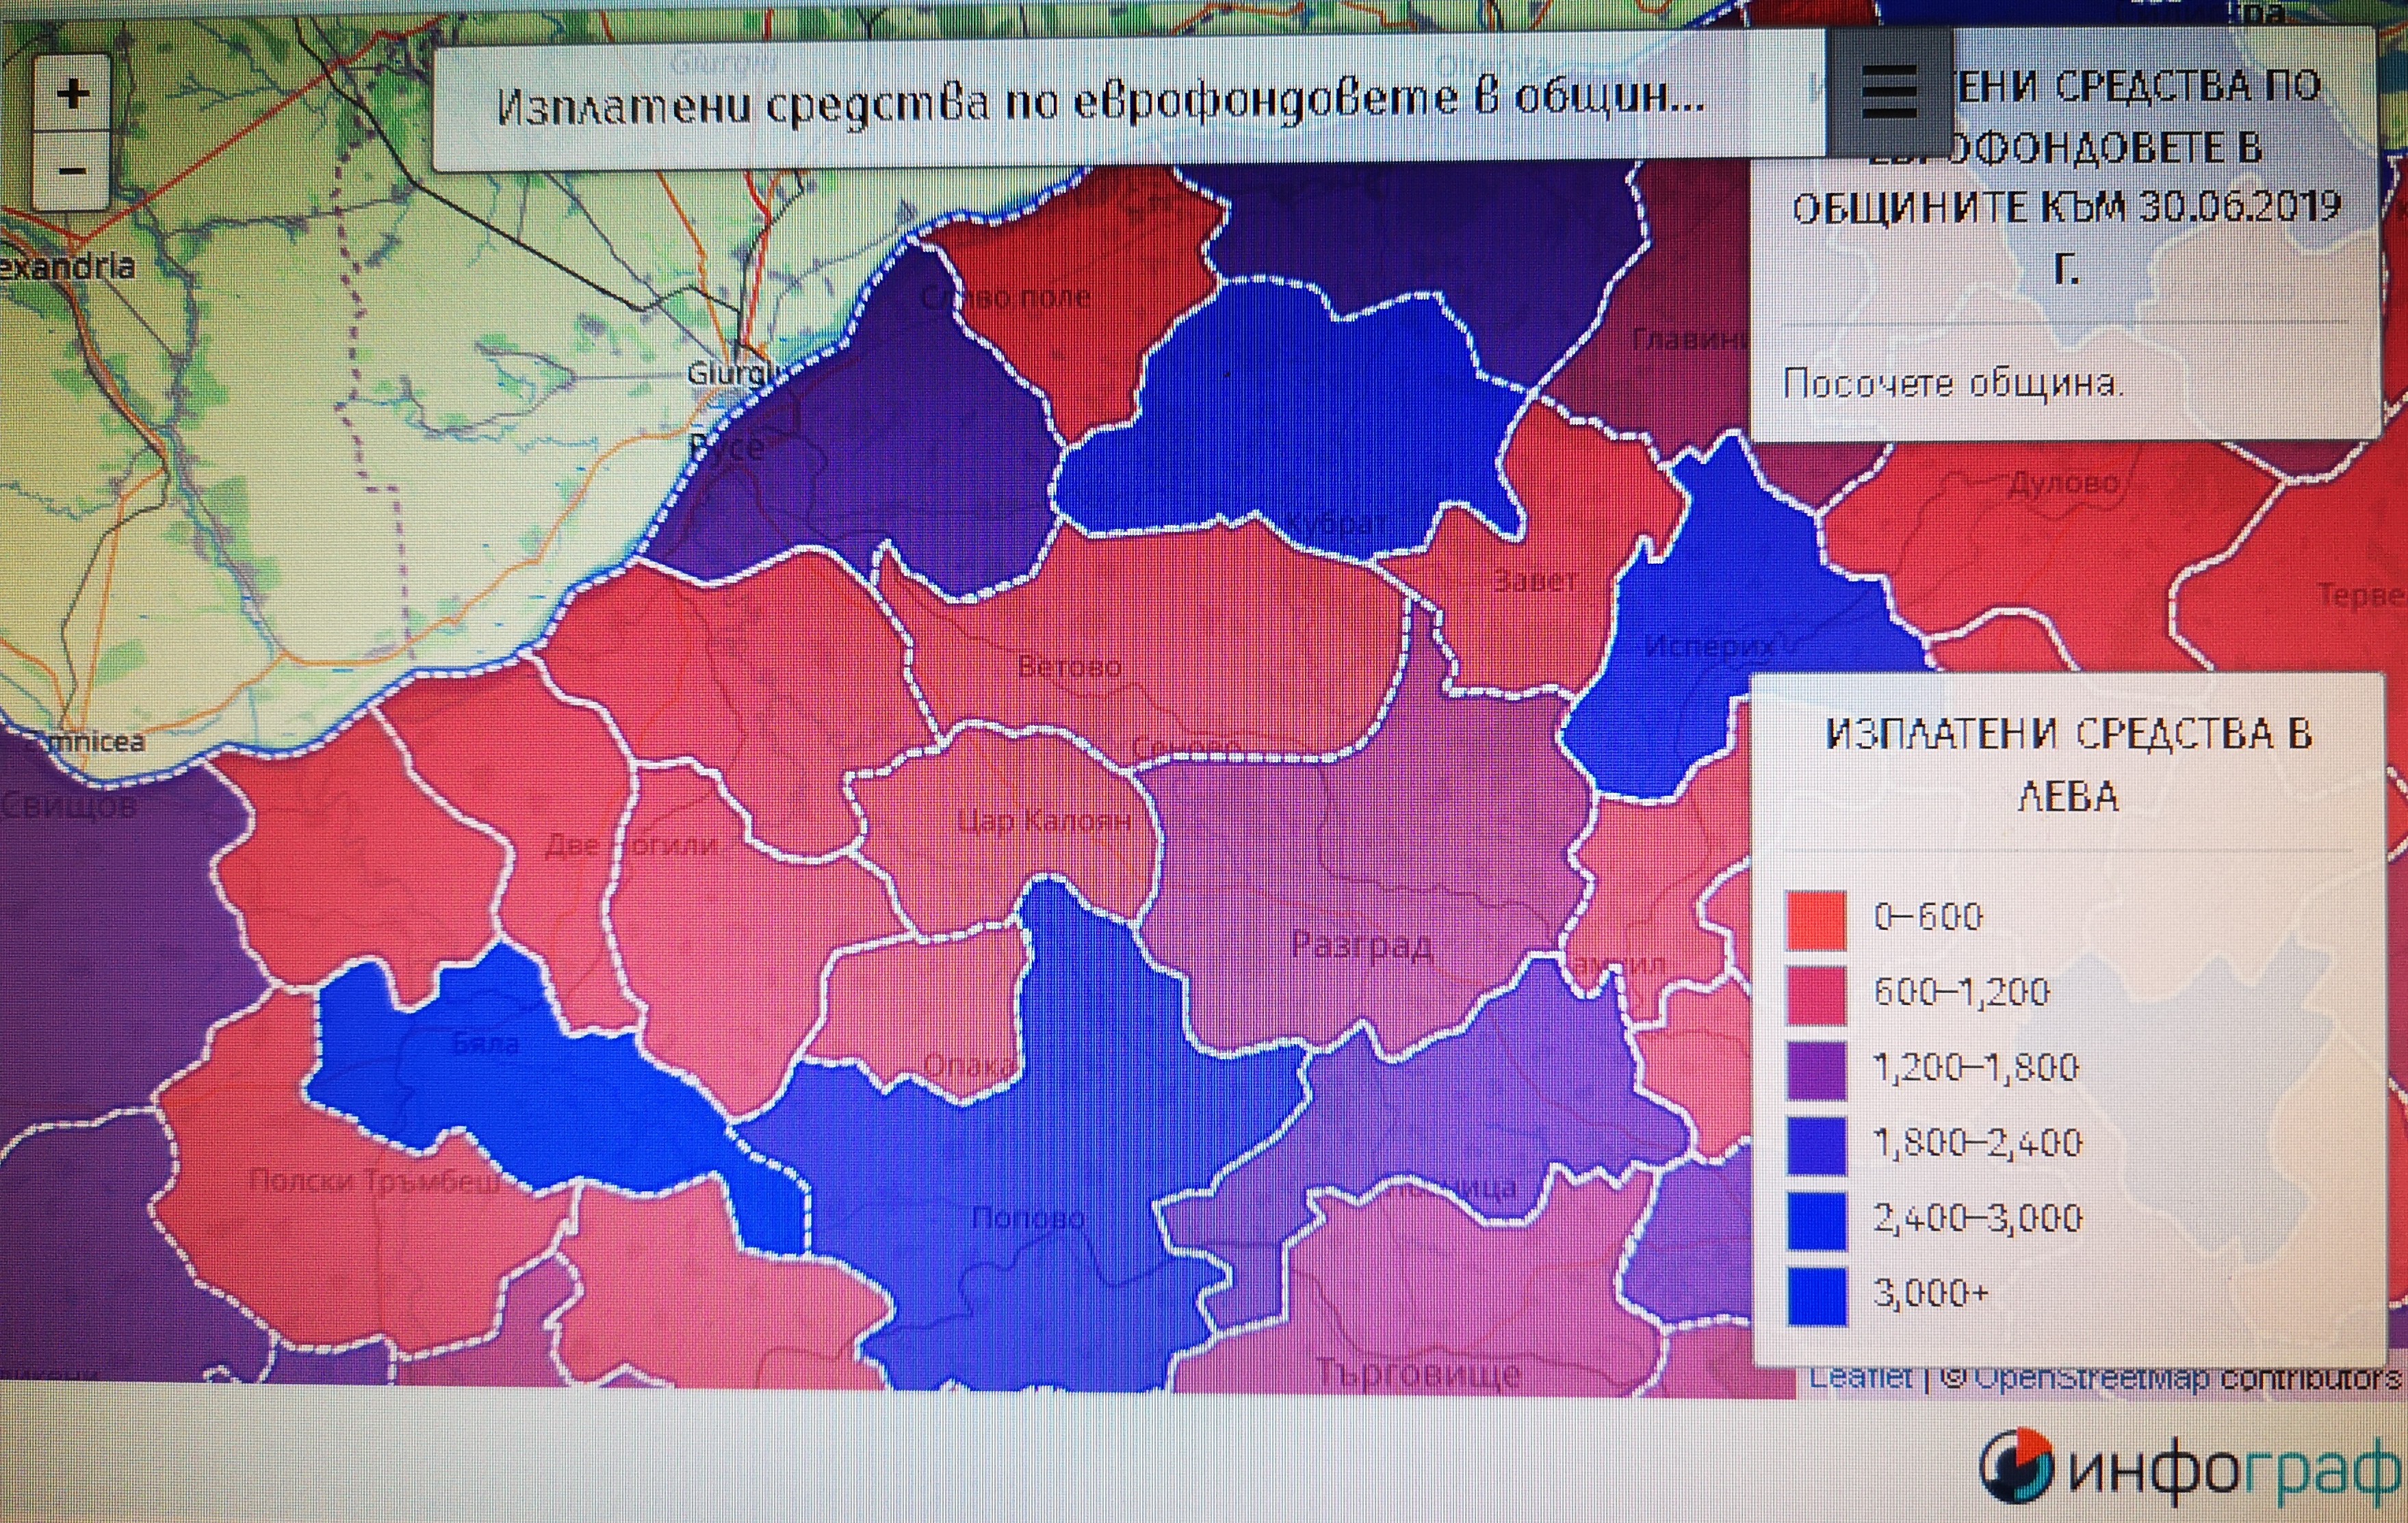 Община Бяла с близо 2,5 пъти повече усвоени евросредства  на жител от Русе 